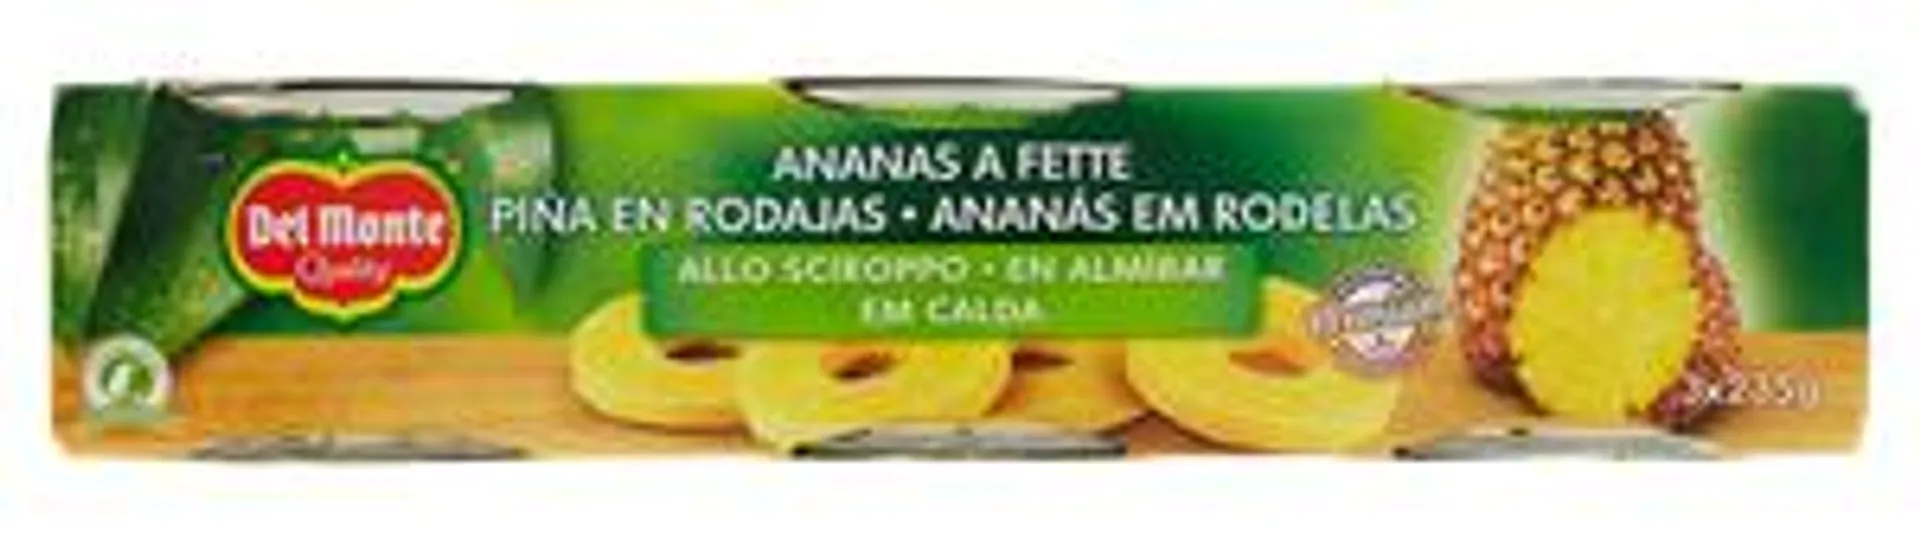 Ananas Del Monte Conf. Da 3